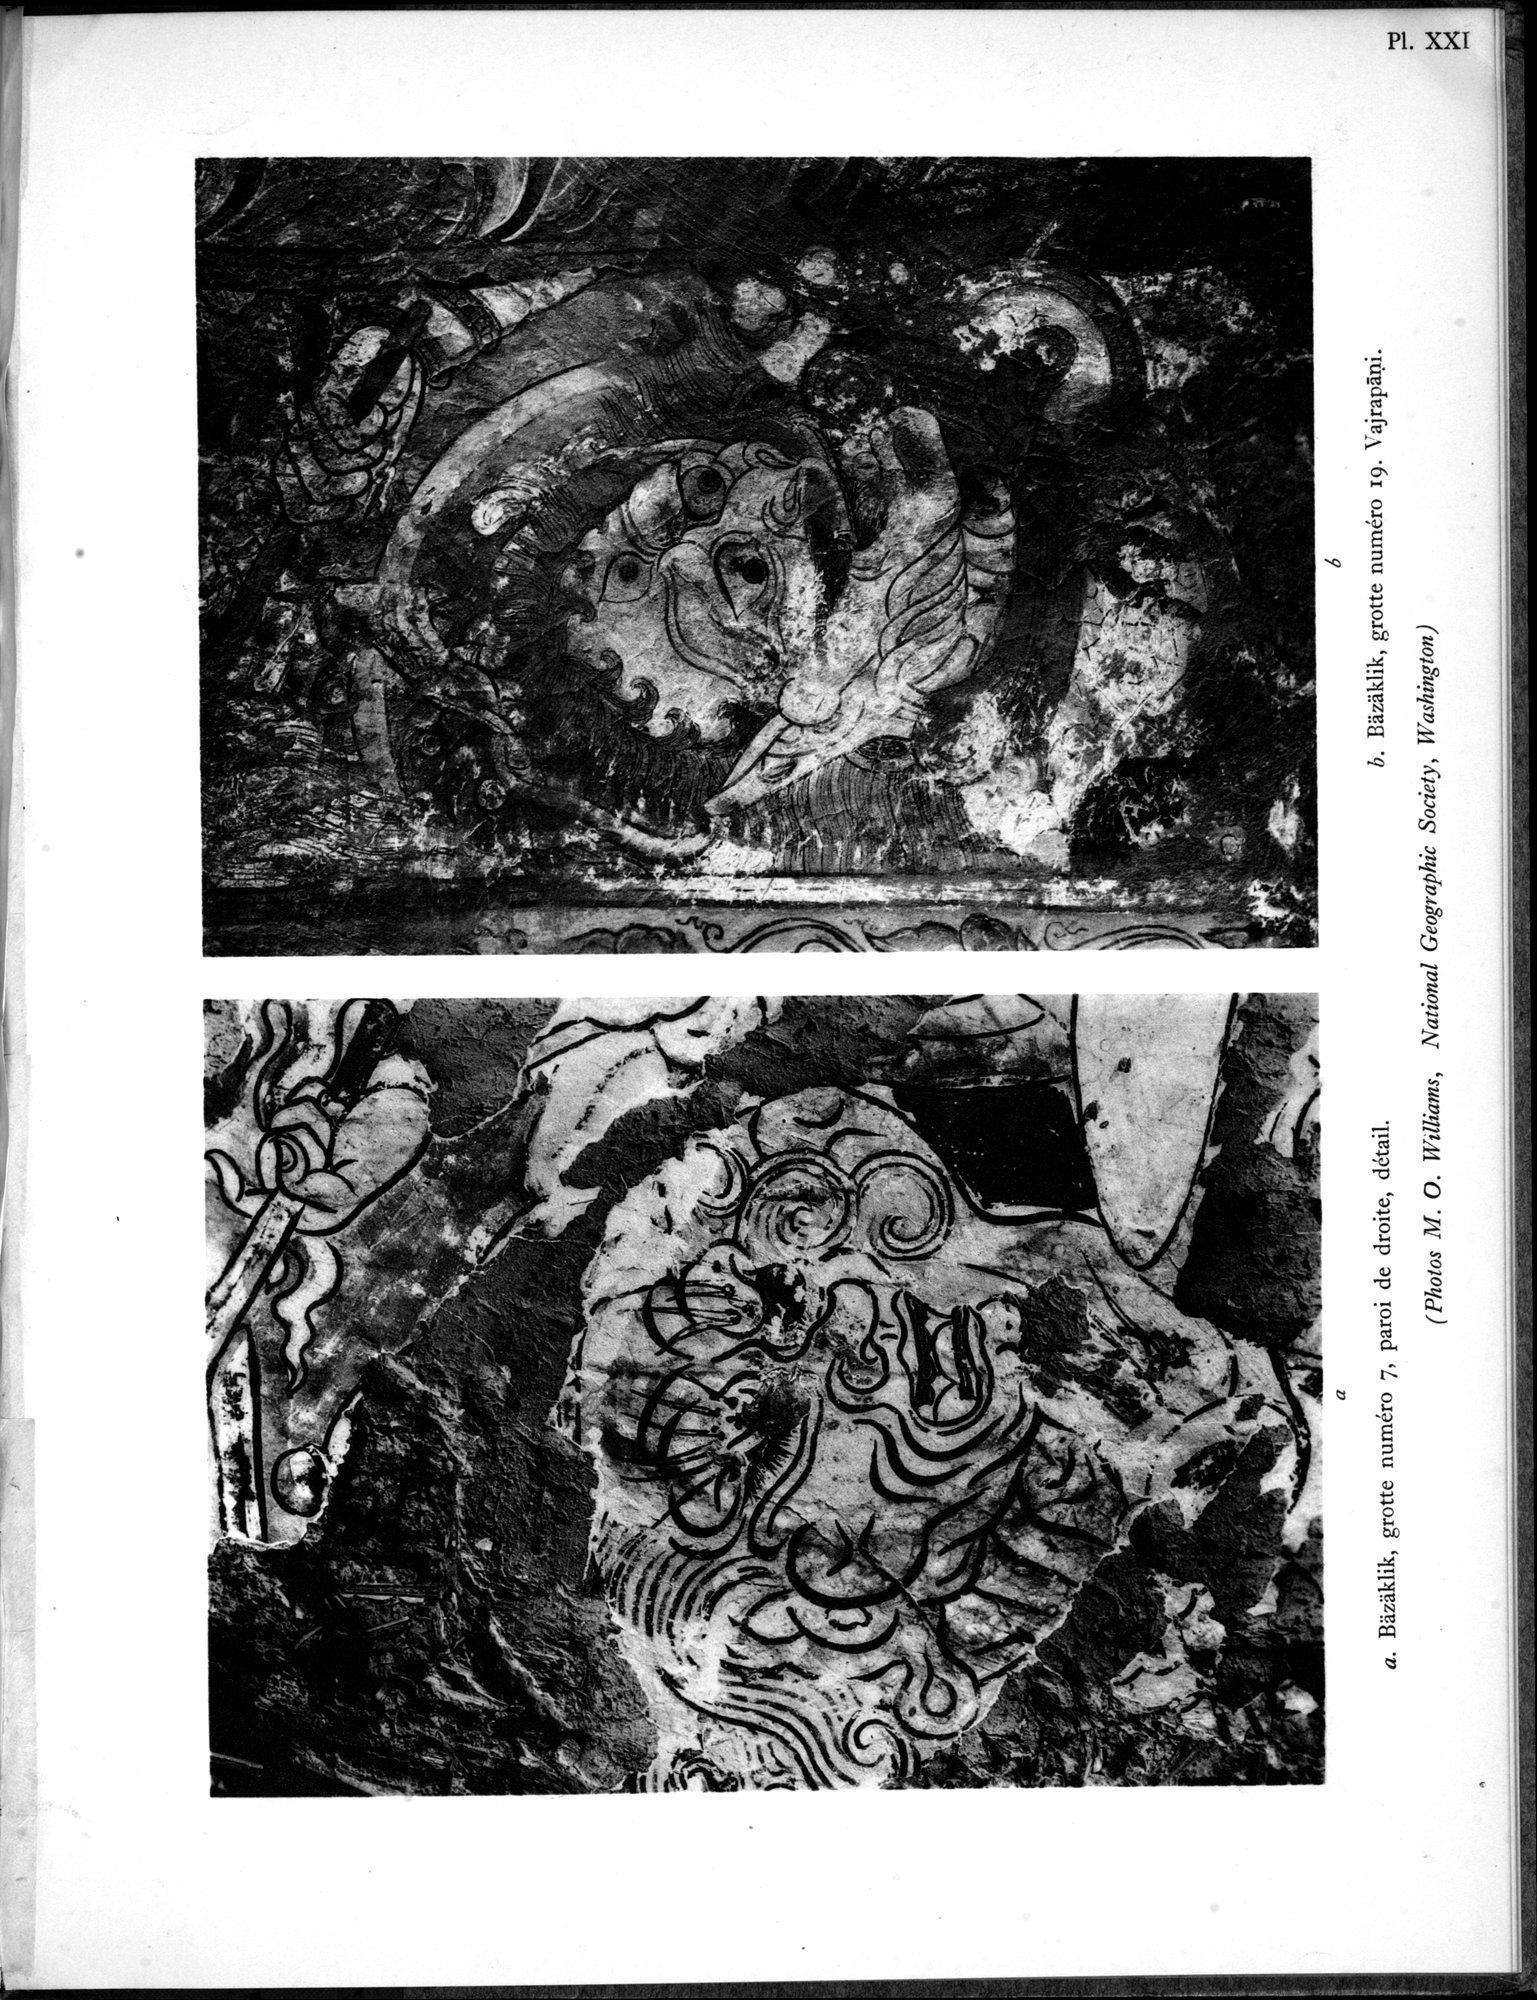 Recherches Archéologiques en Asie Centrale (1931) : vol.1 / Page 83 (Grayscale High Resolution Image)